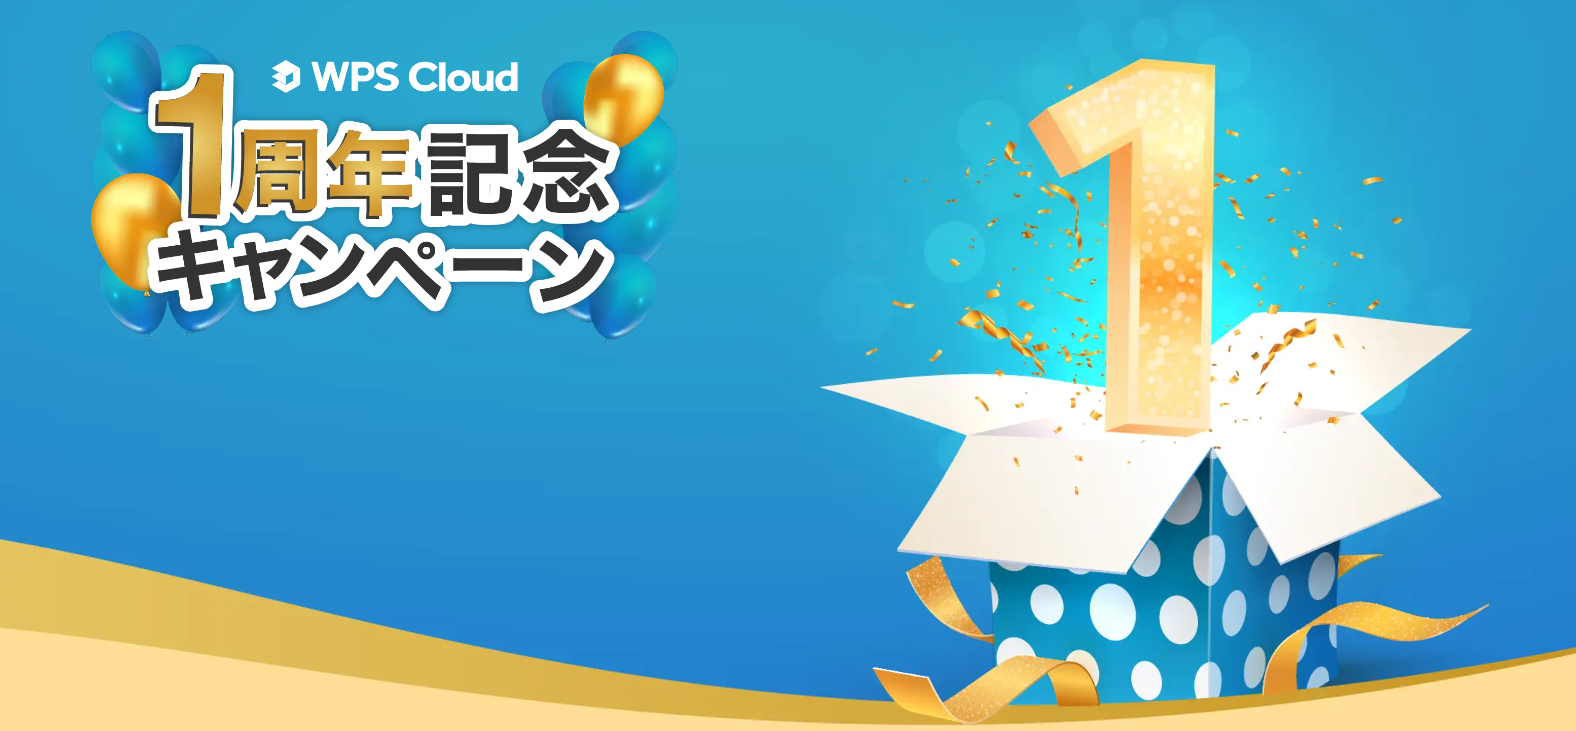 キングソフトのオフィスクラウドサービス「WPS Cloud」がリリースから1周年を記念してキャンペーンを実施